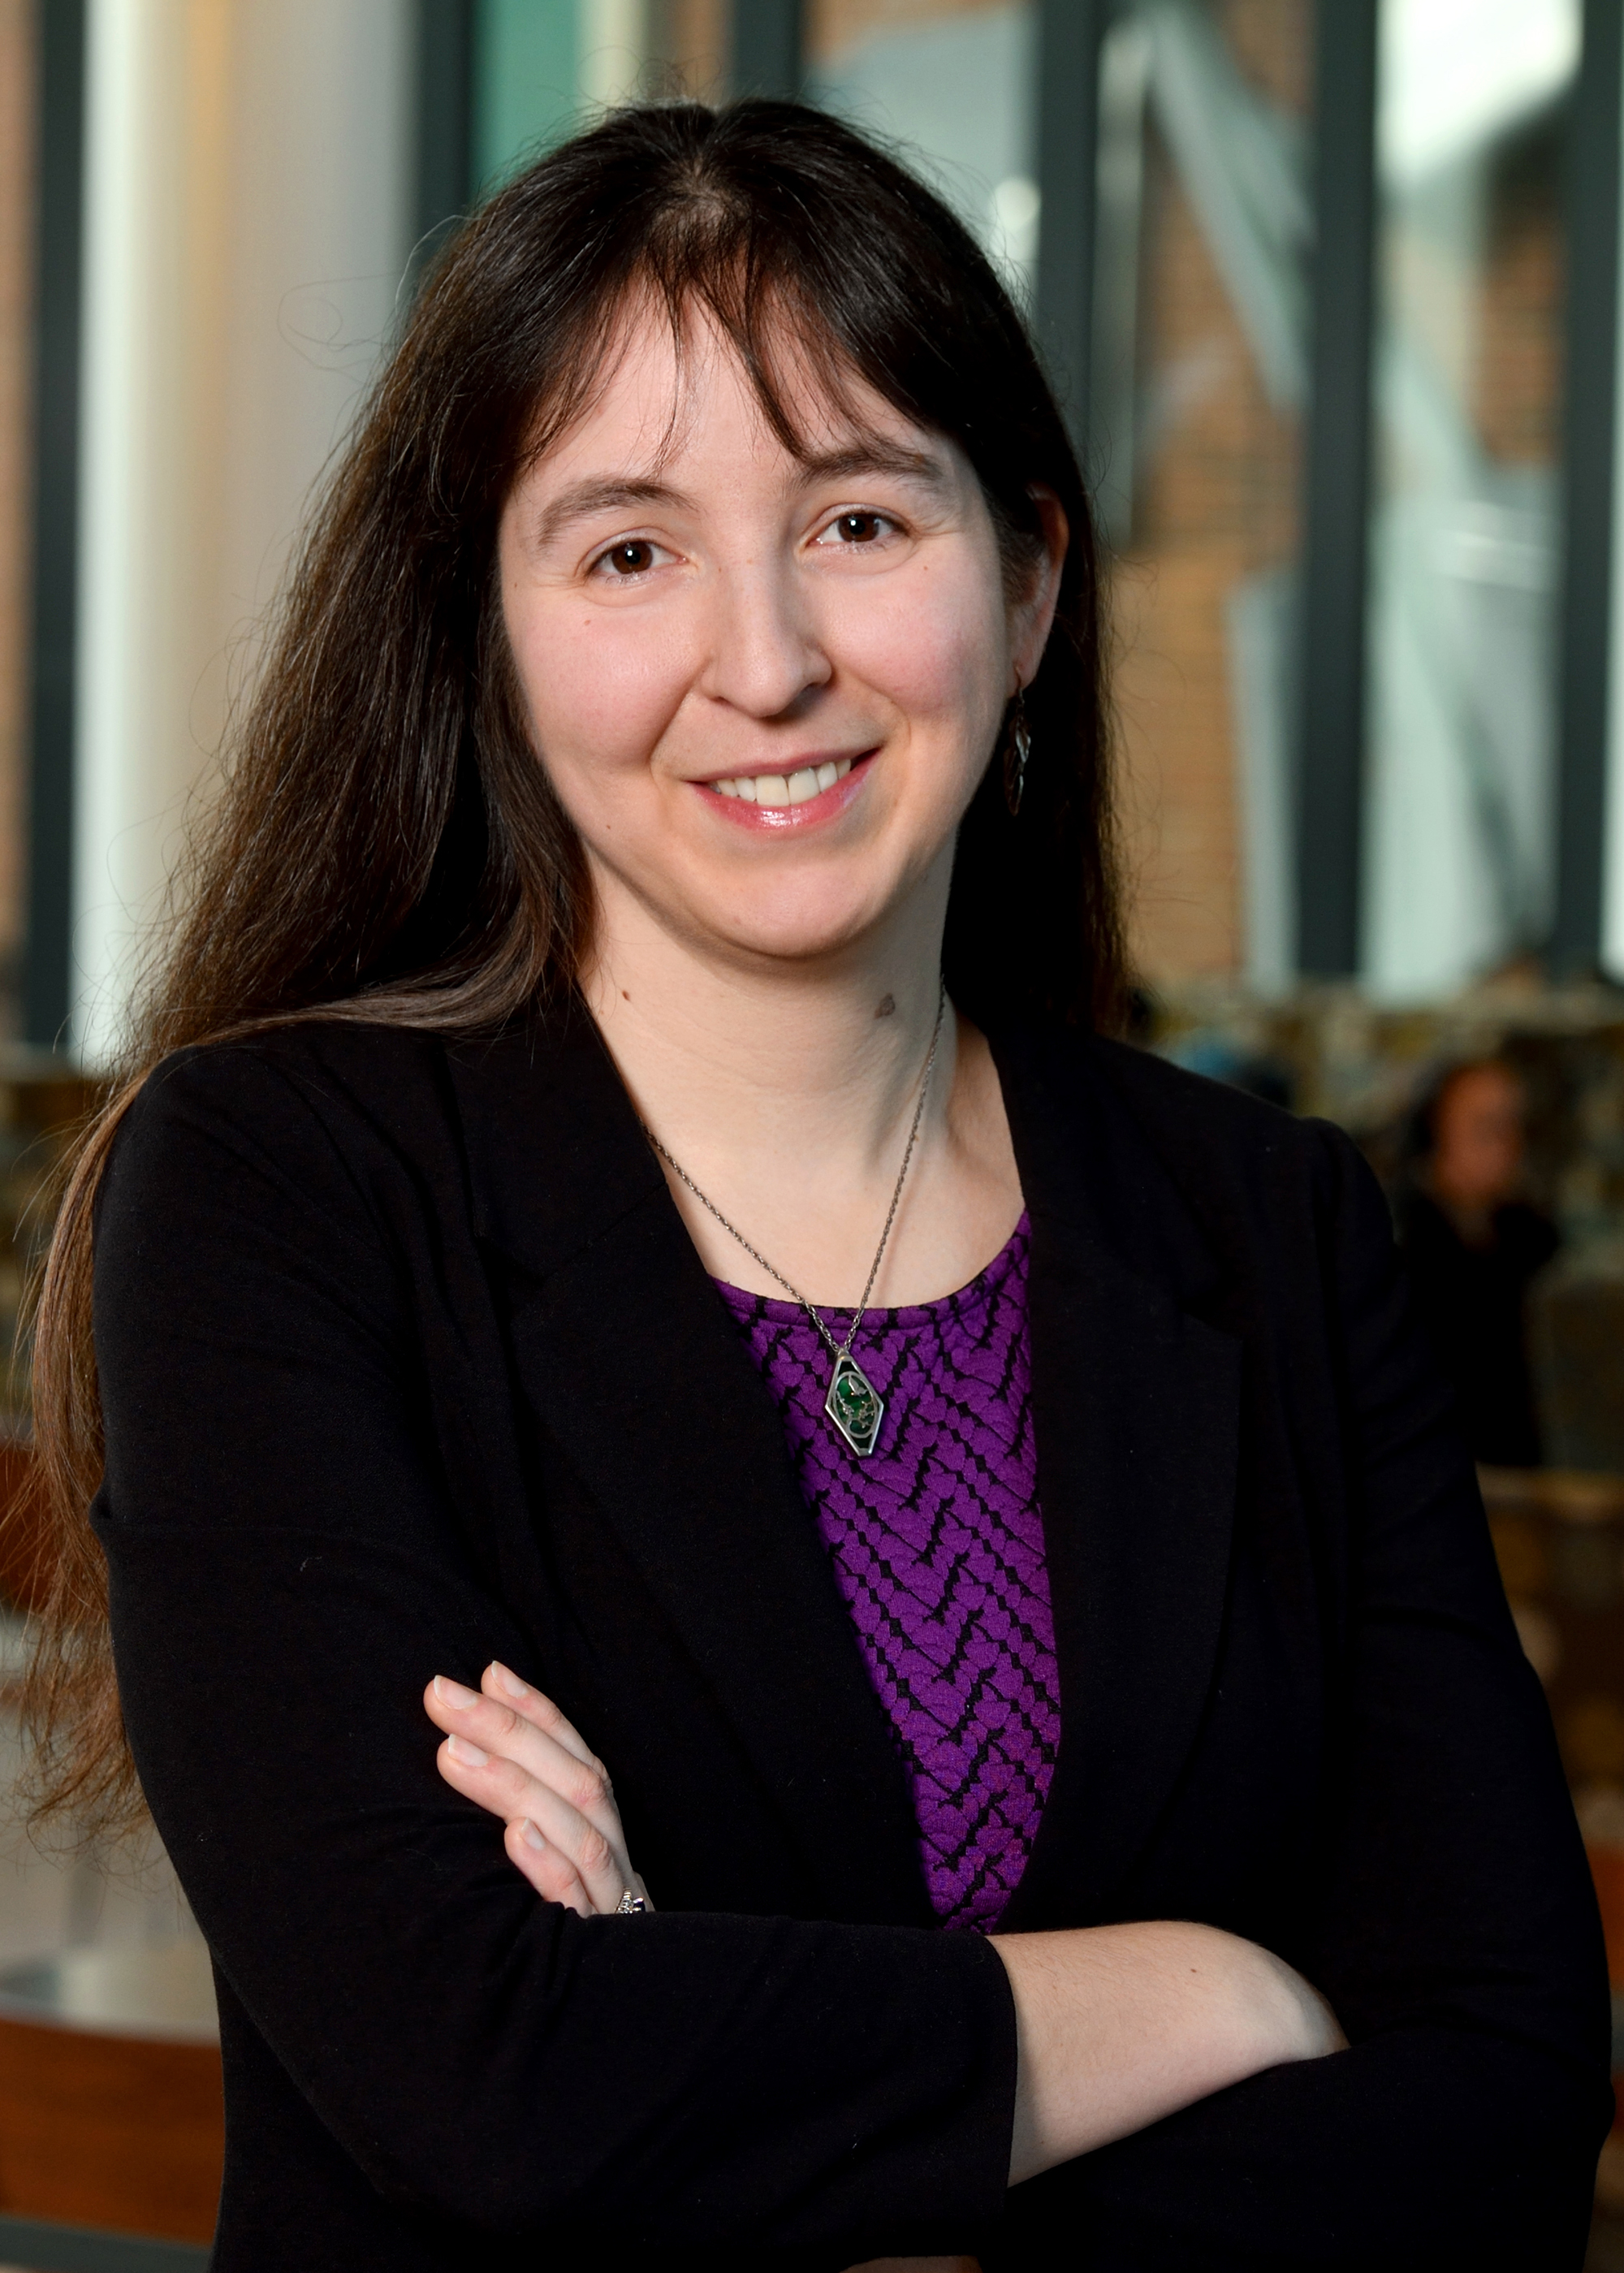 Assistant Professor Susannah Dorfman